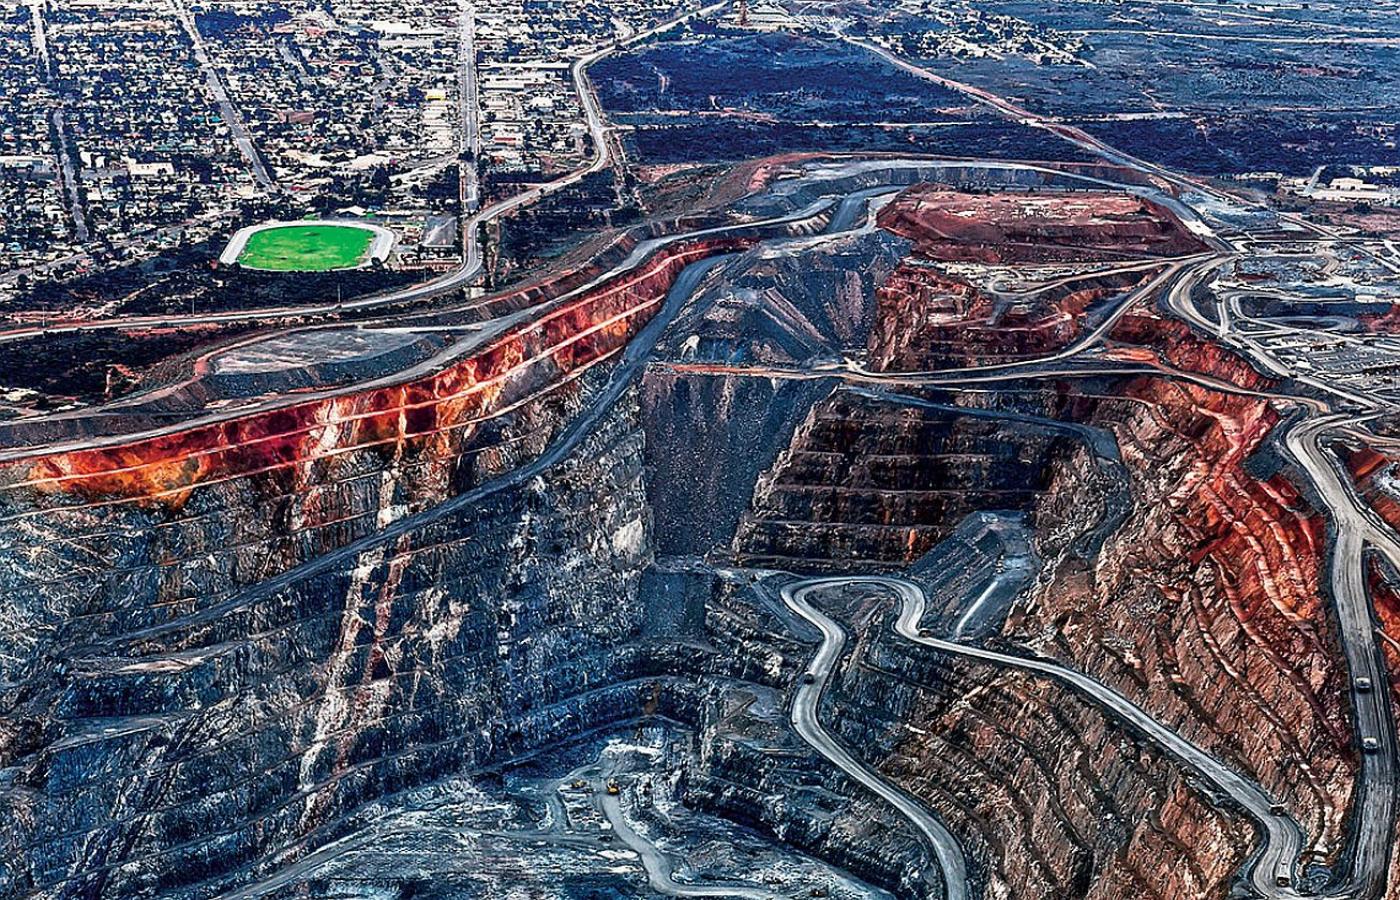 Także złoto wydobywa się na masową skalę. Na fot.: odkrywkowa kopalnia w pobliżu australijskiego miasta Kalgoorlie.